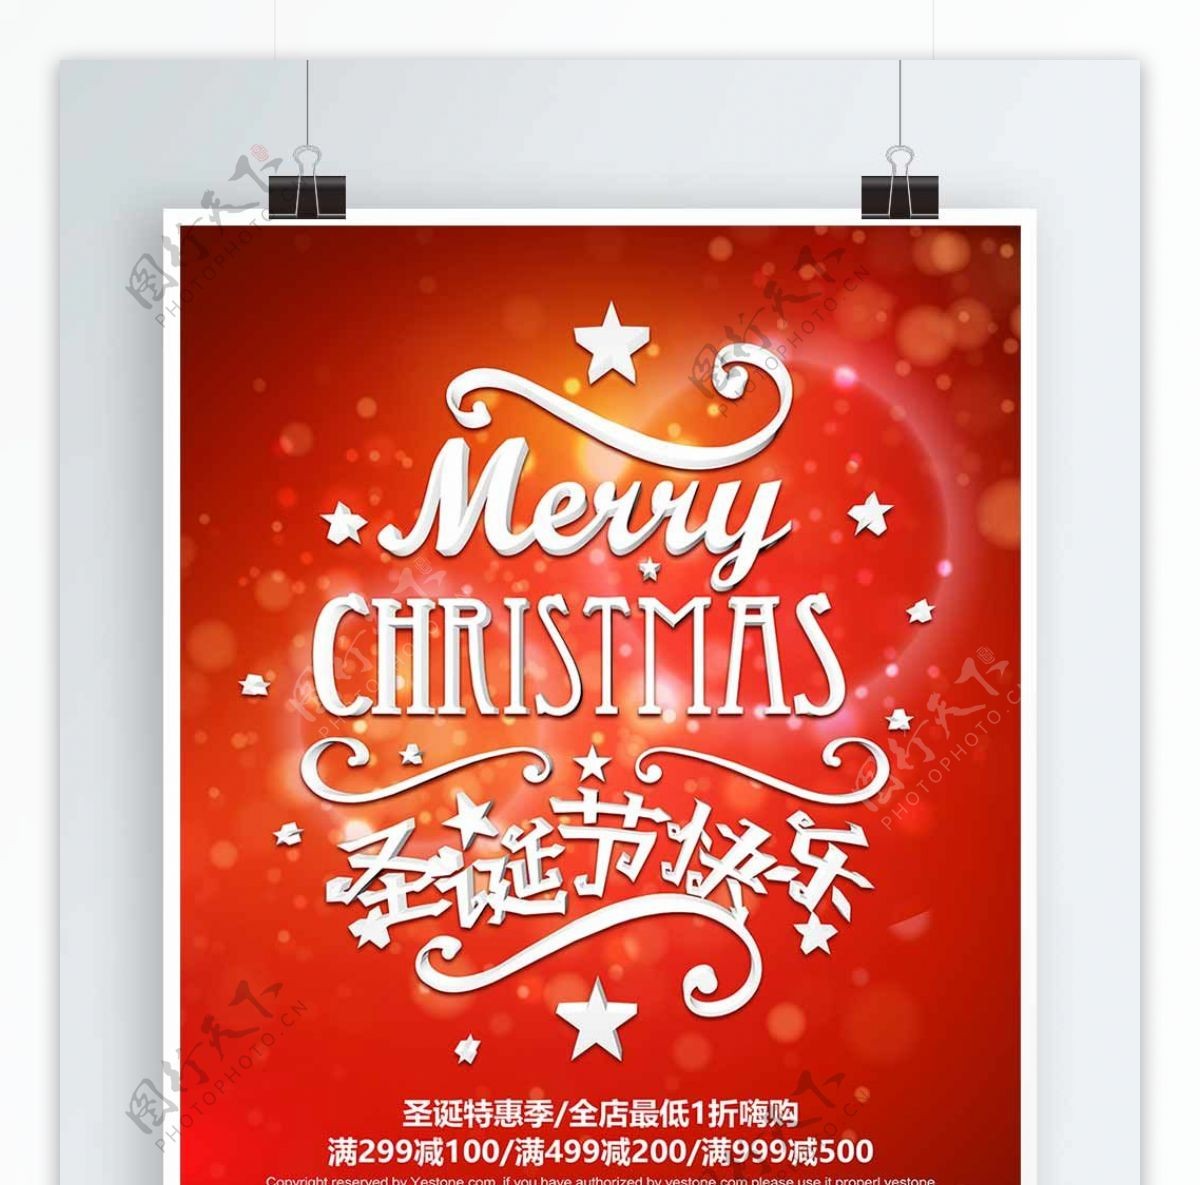 红色立体圣诞节快乐促销活动宣传海报